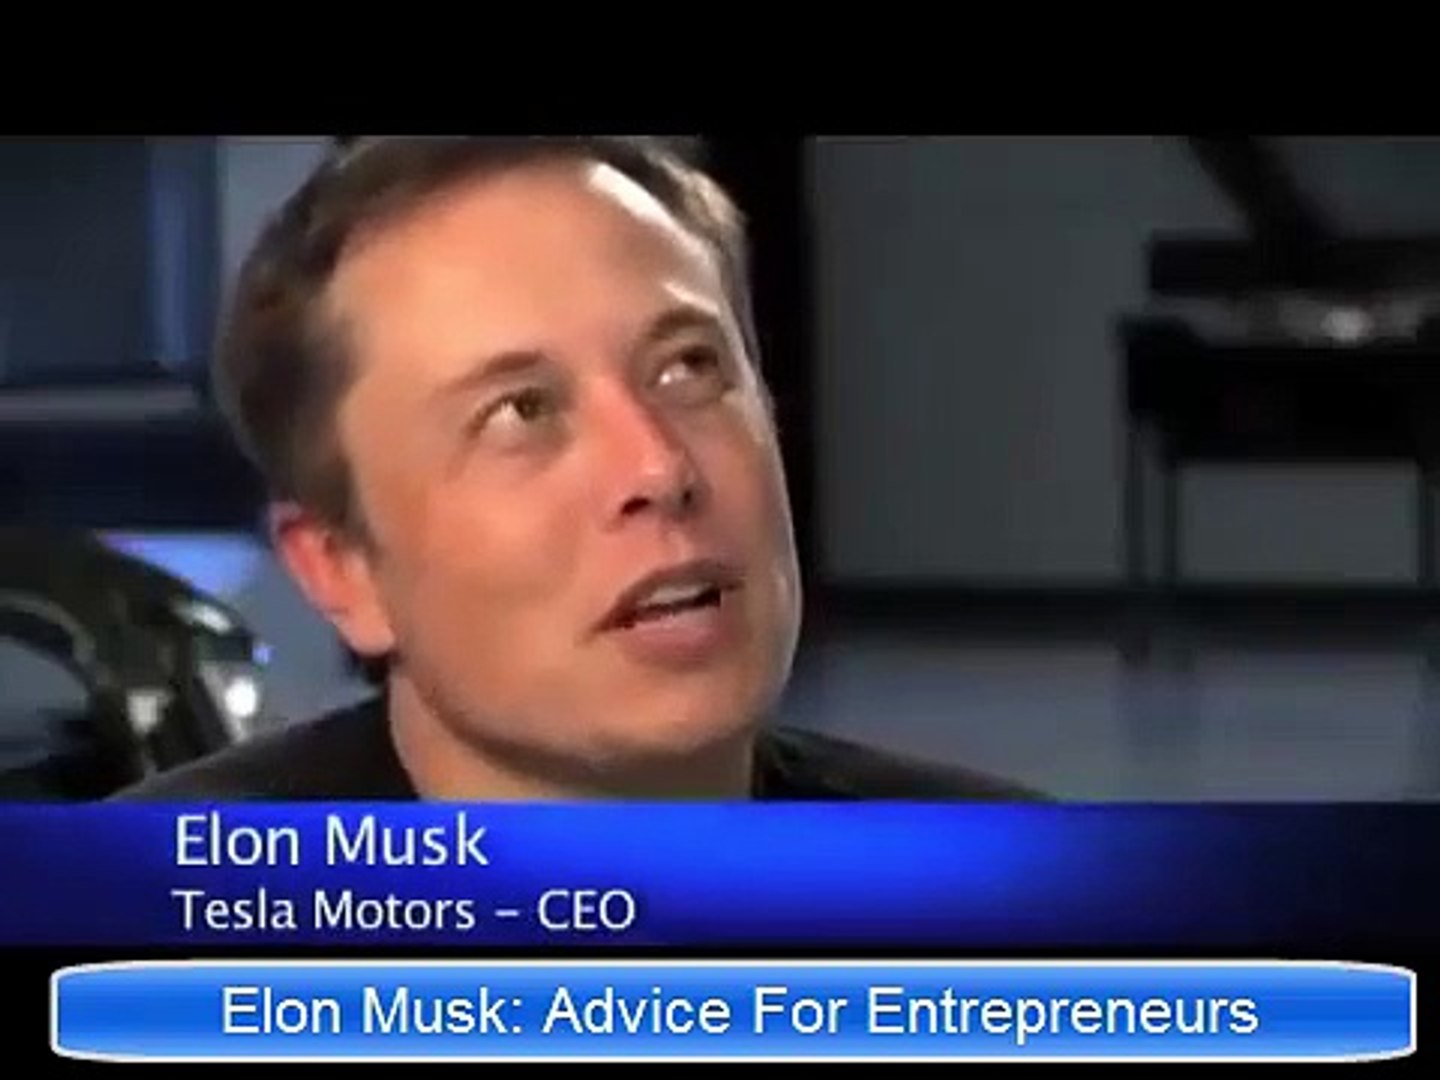 Elon Musk Advice For Entrepreneurs